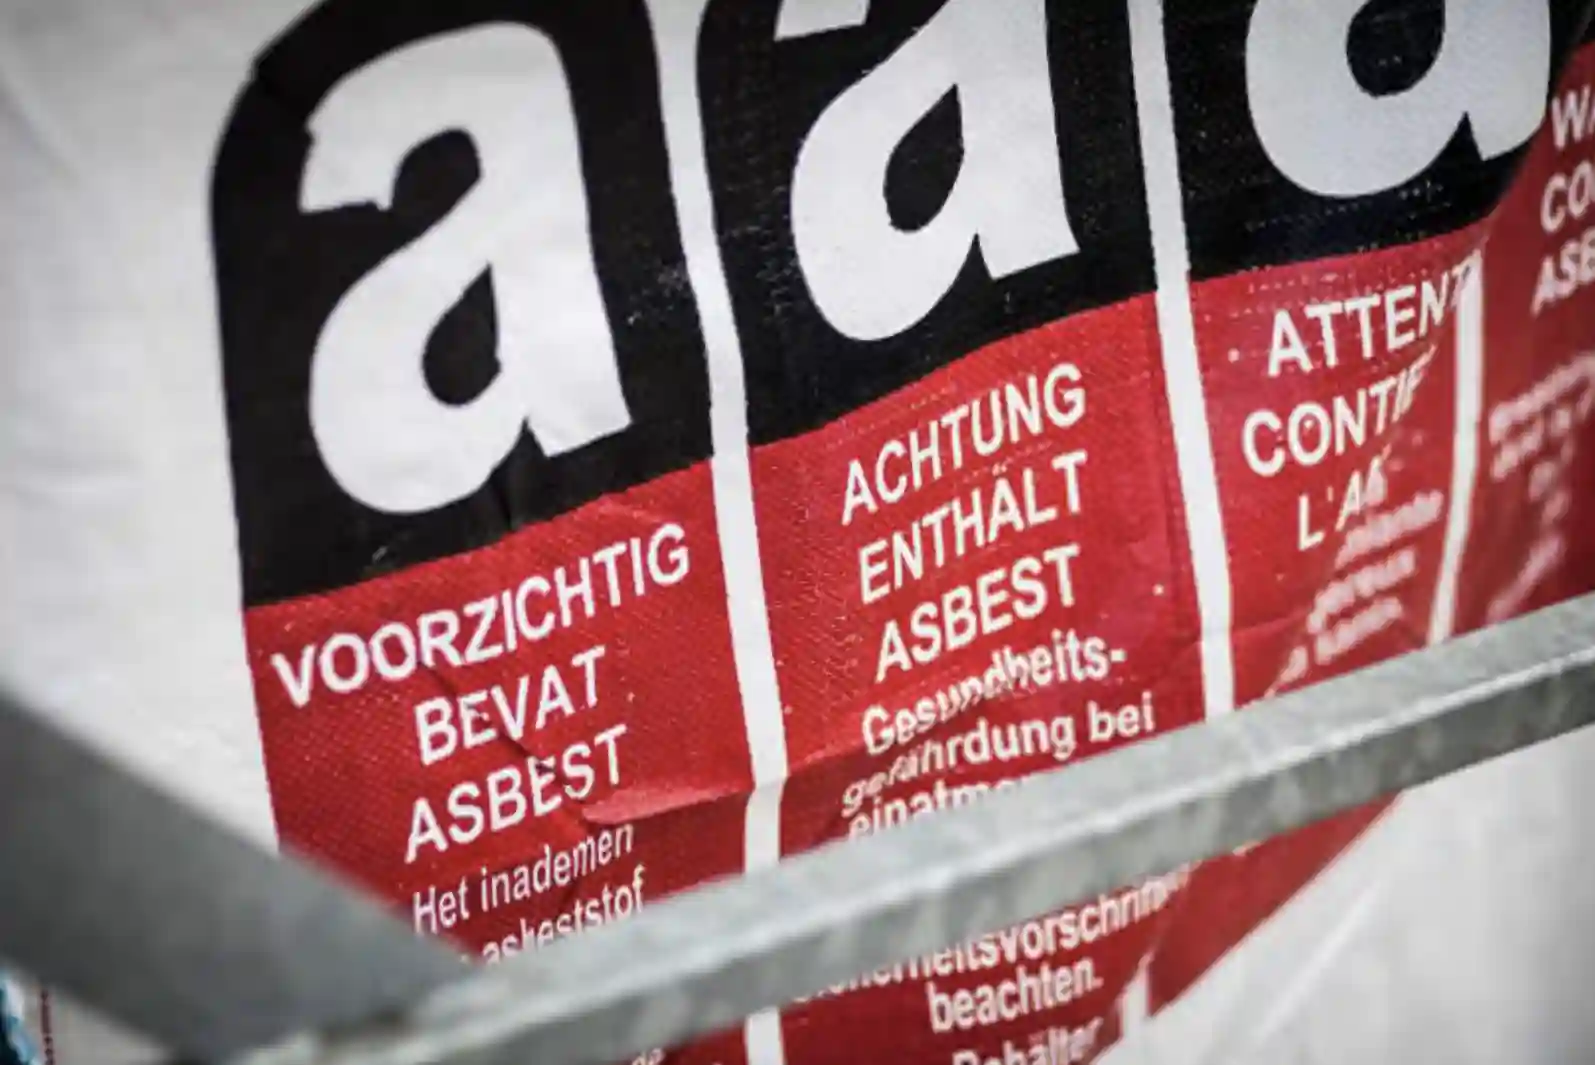 Asbest Verwijdering - Professionele en veilige asbestverwijdering voor uw gebouwen: EIHPOS GROUP Dakwerken Mechelen